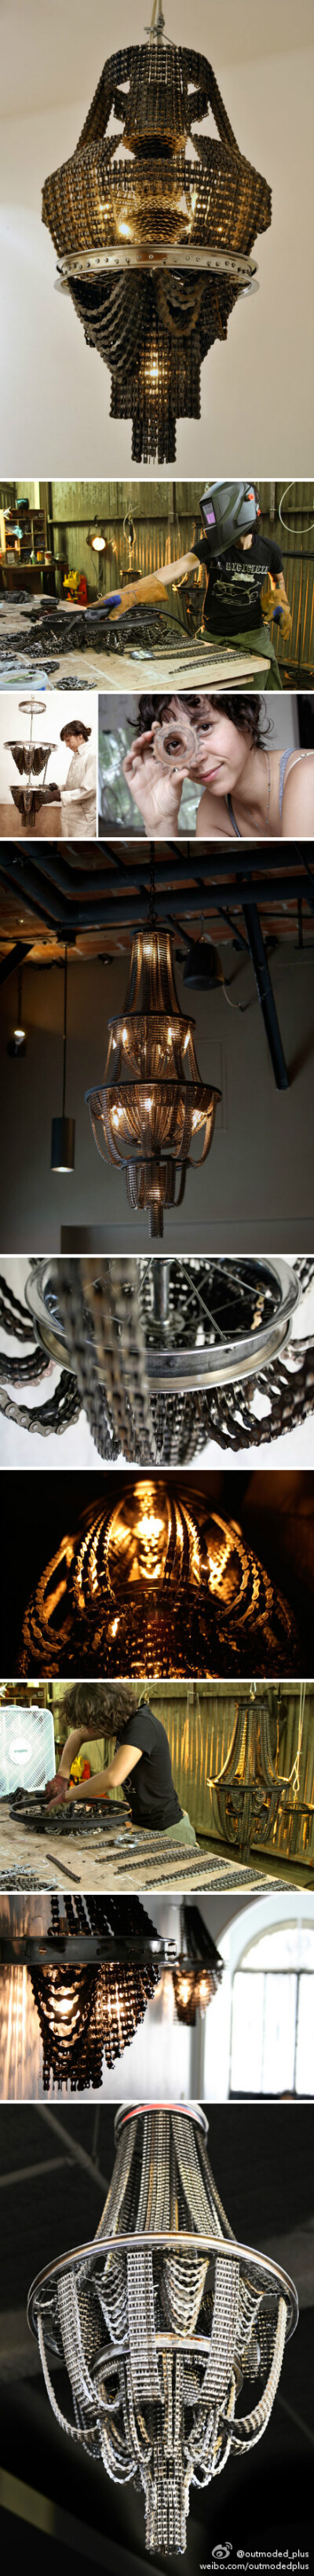 艺术家Carolina Fontoura Alzaga用再生自行车零件创造的灯具，完美呈现自行车朋克文化。超美好啊~